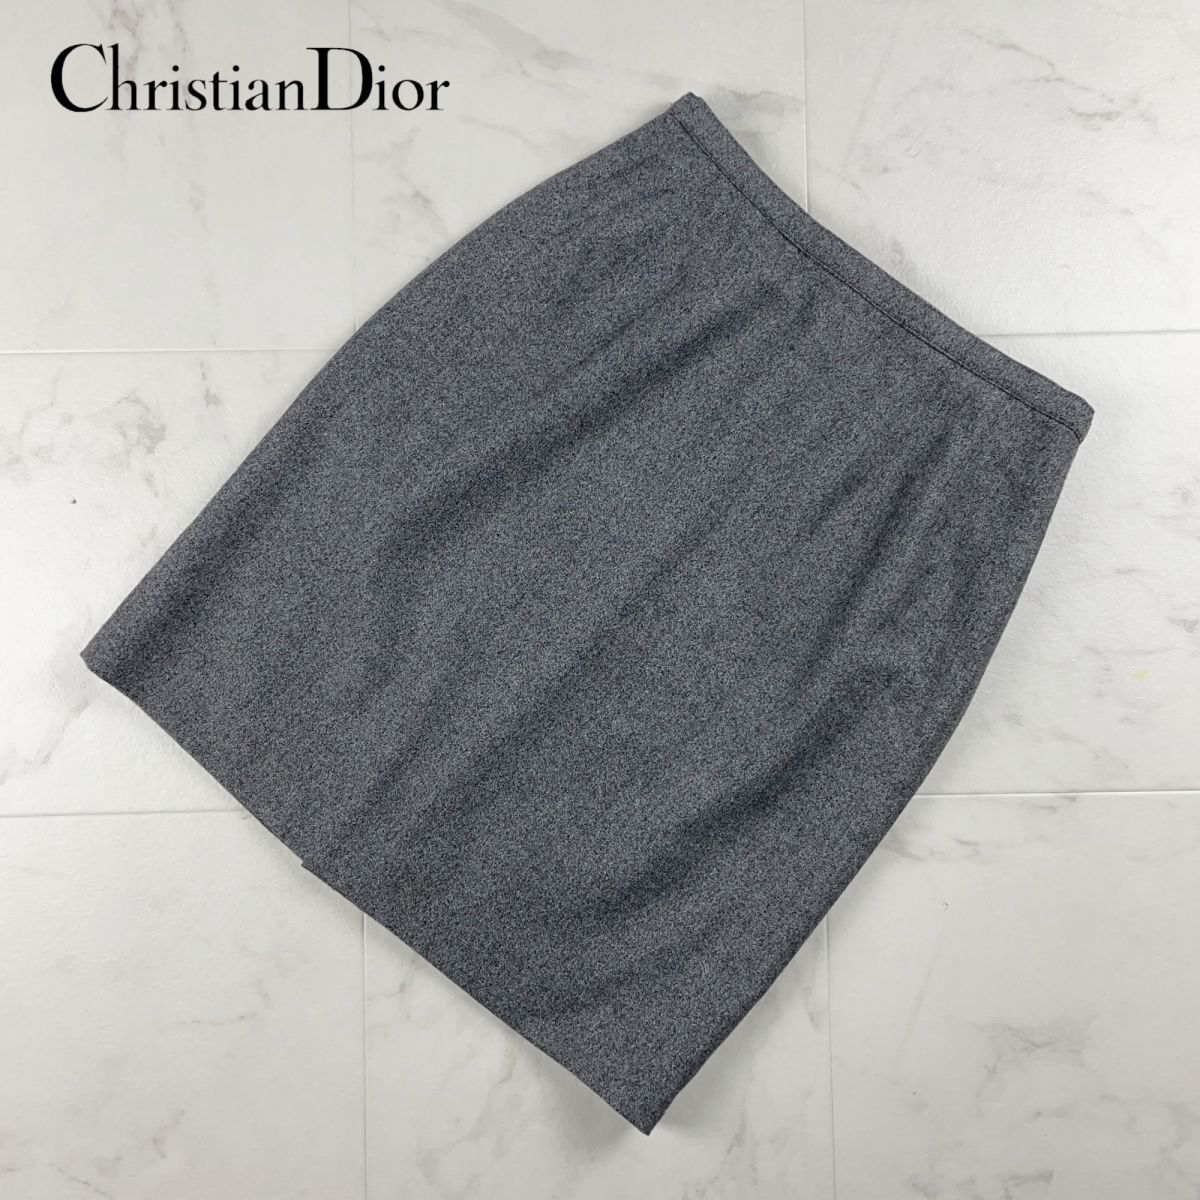  прекрасный товар Christian Dior Christian Dior шерсть 100% колени длина юбка подкладка есть женский низ серый размер 11*FC220